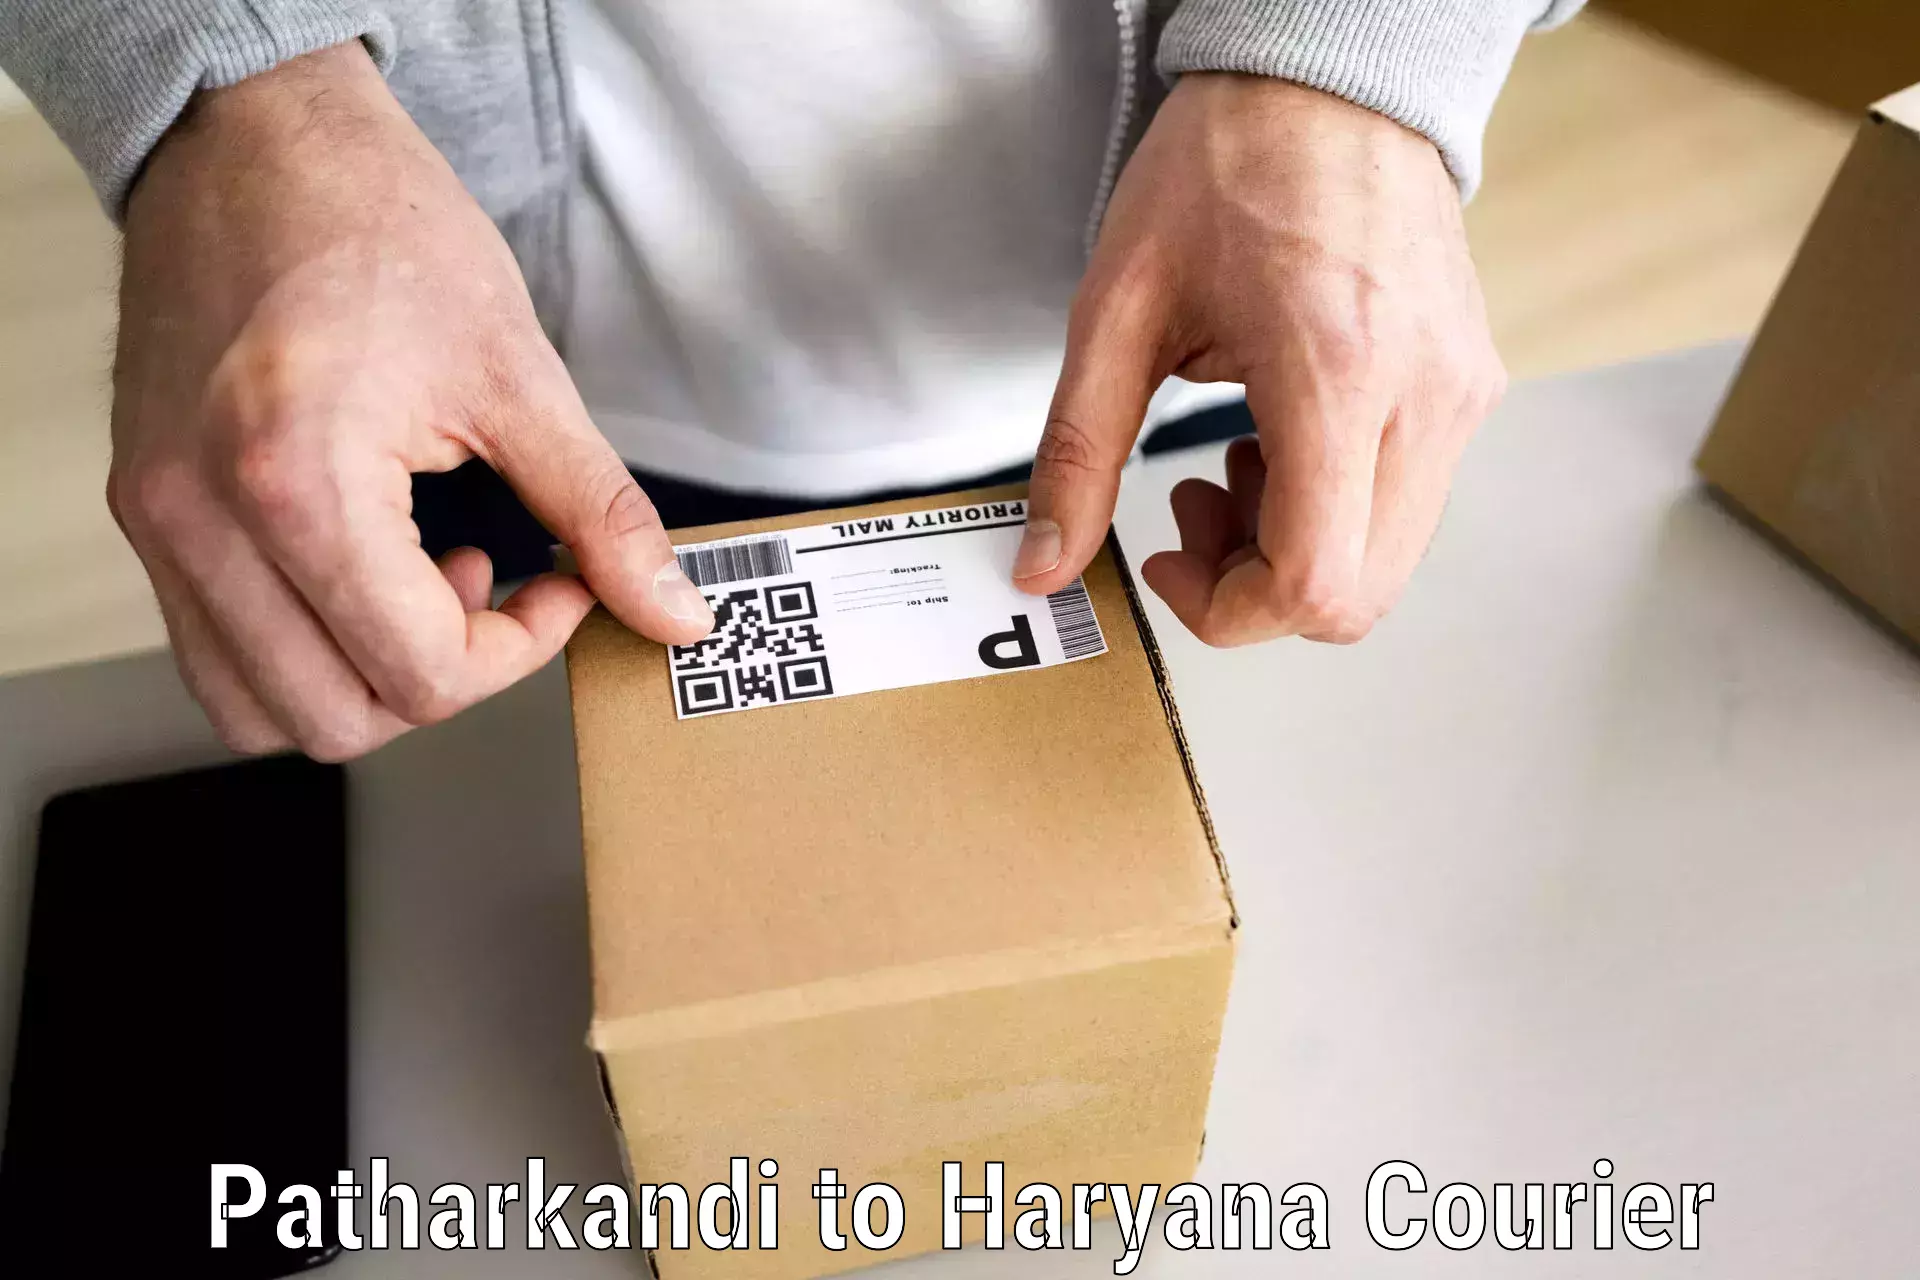 Expert goods movers Patharkandi to Chaudhary Charan Singh Haryana Agricultural University Hisar